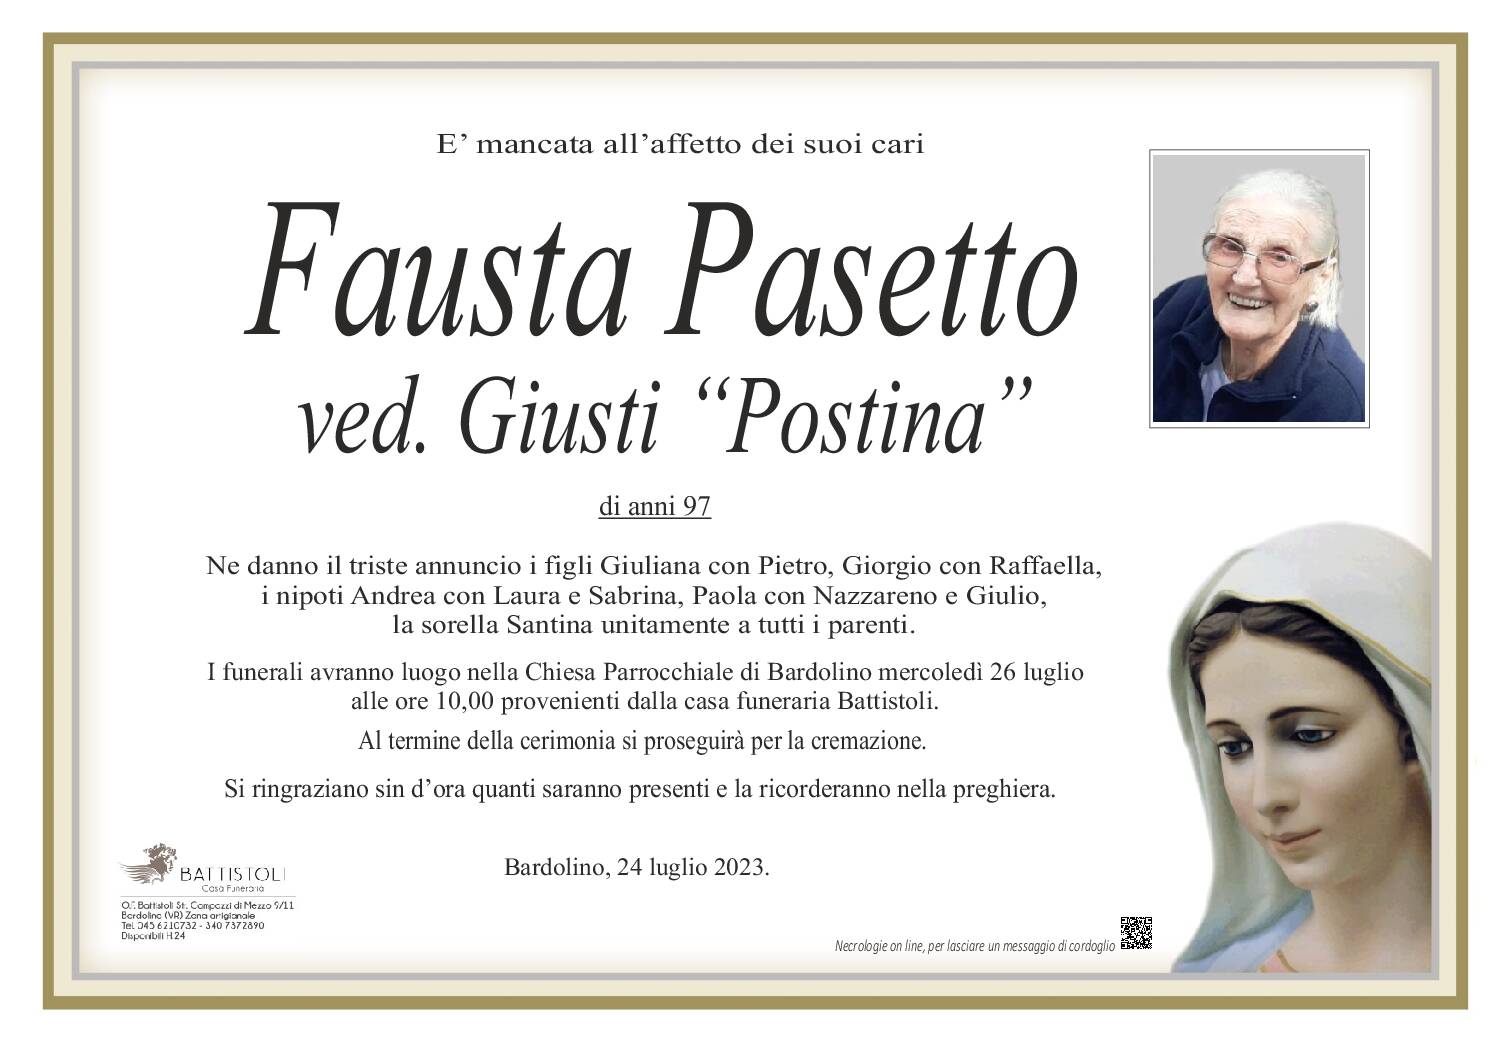 Pasetto Fausta